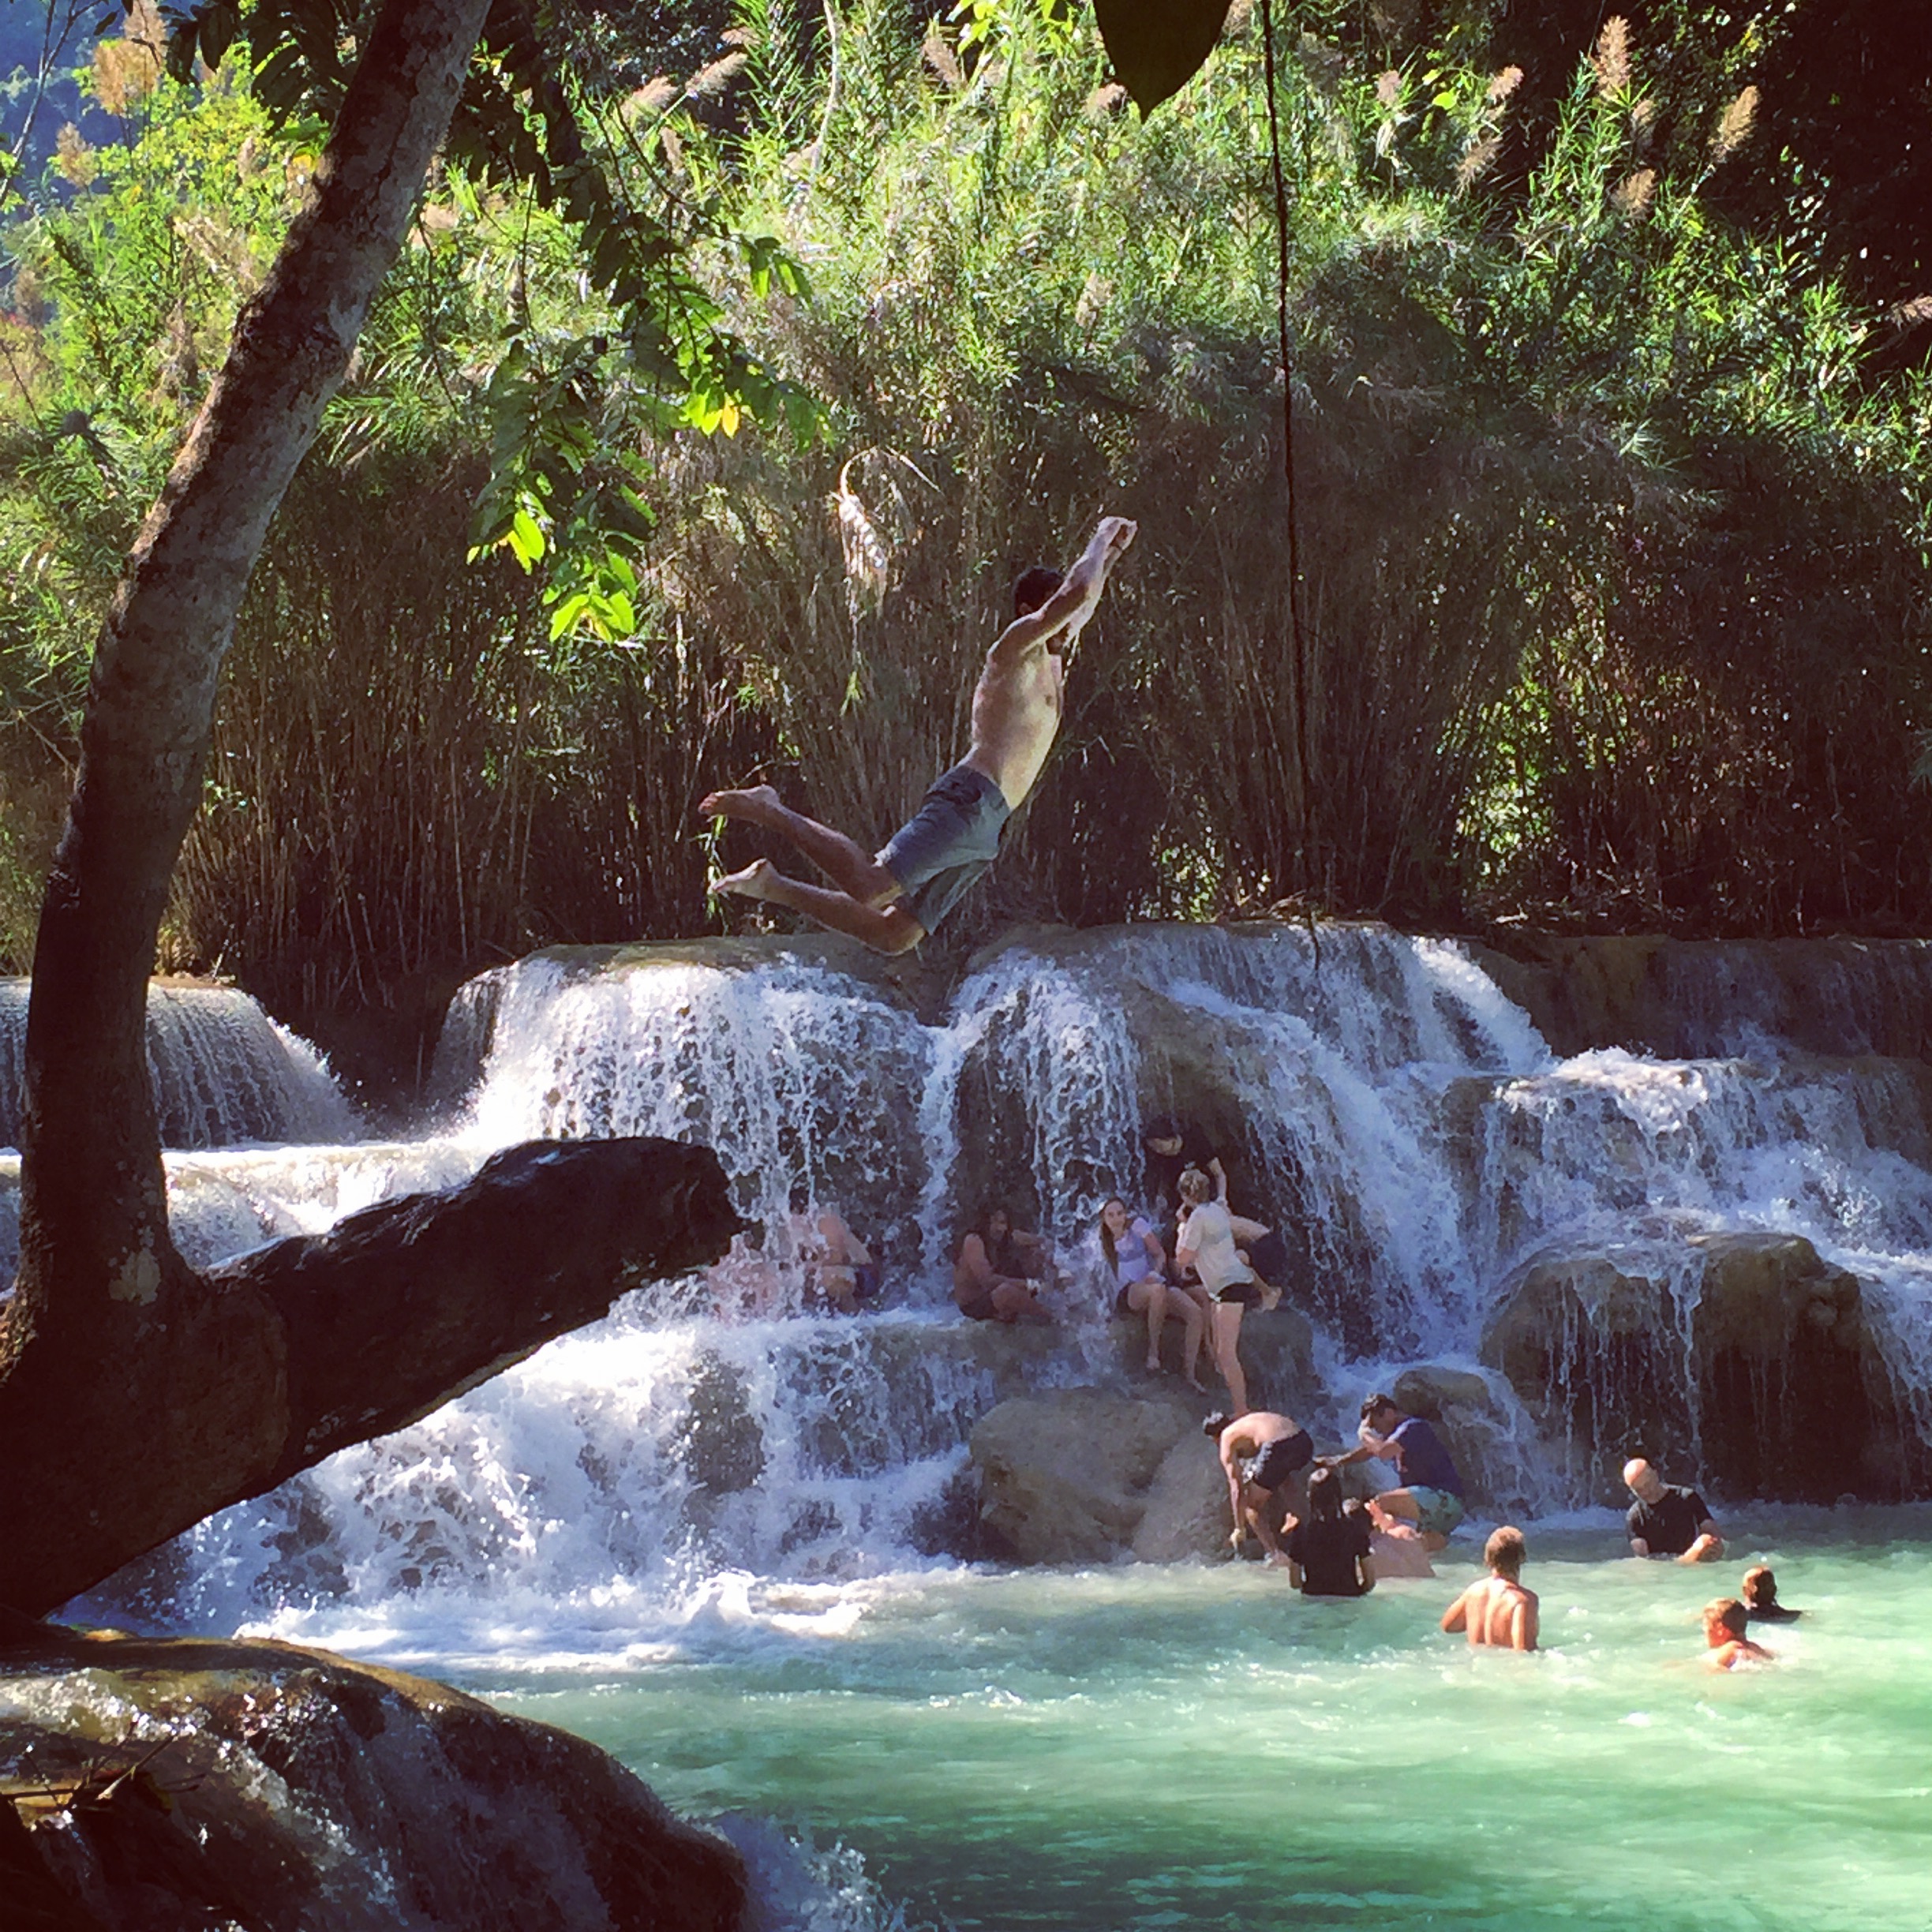 Jungle Jump at Tat Kuang Si waterfall